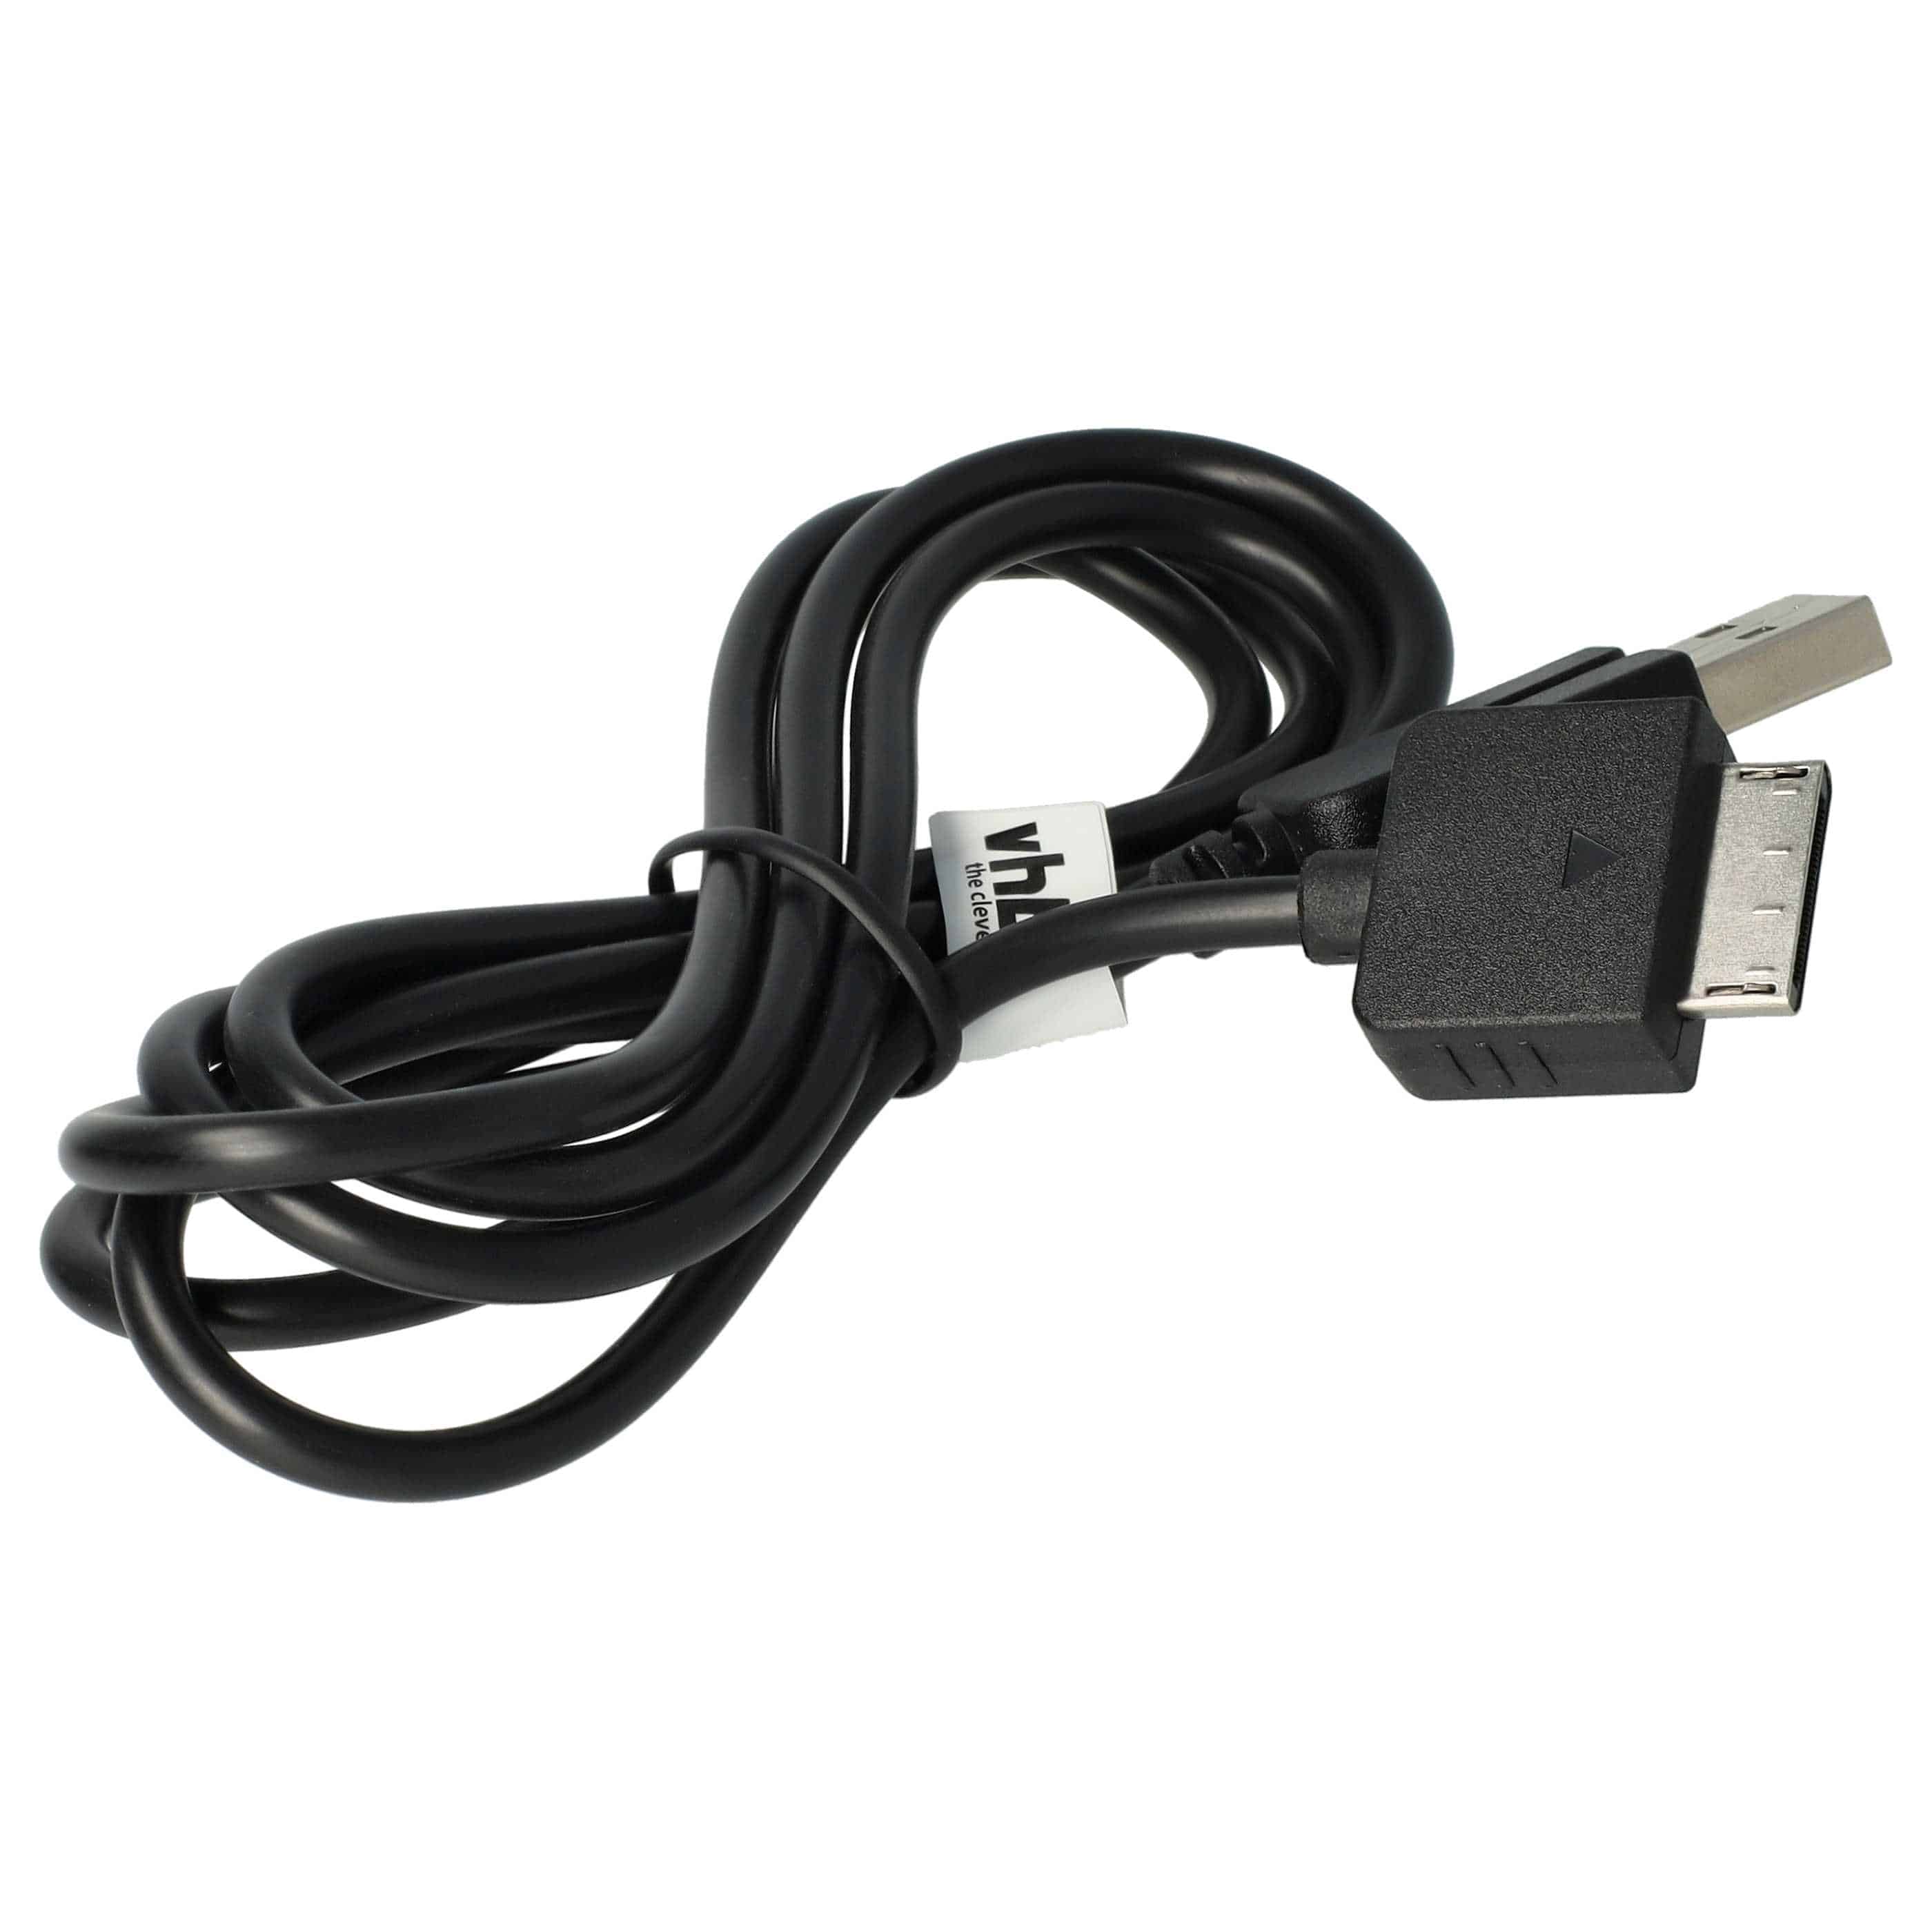 vhbw Câble USB console - câble de données 2 en 1 / chargement 1,2m de long